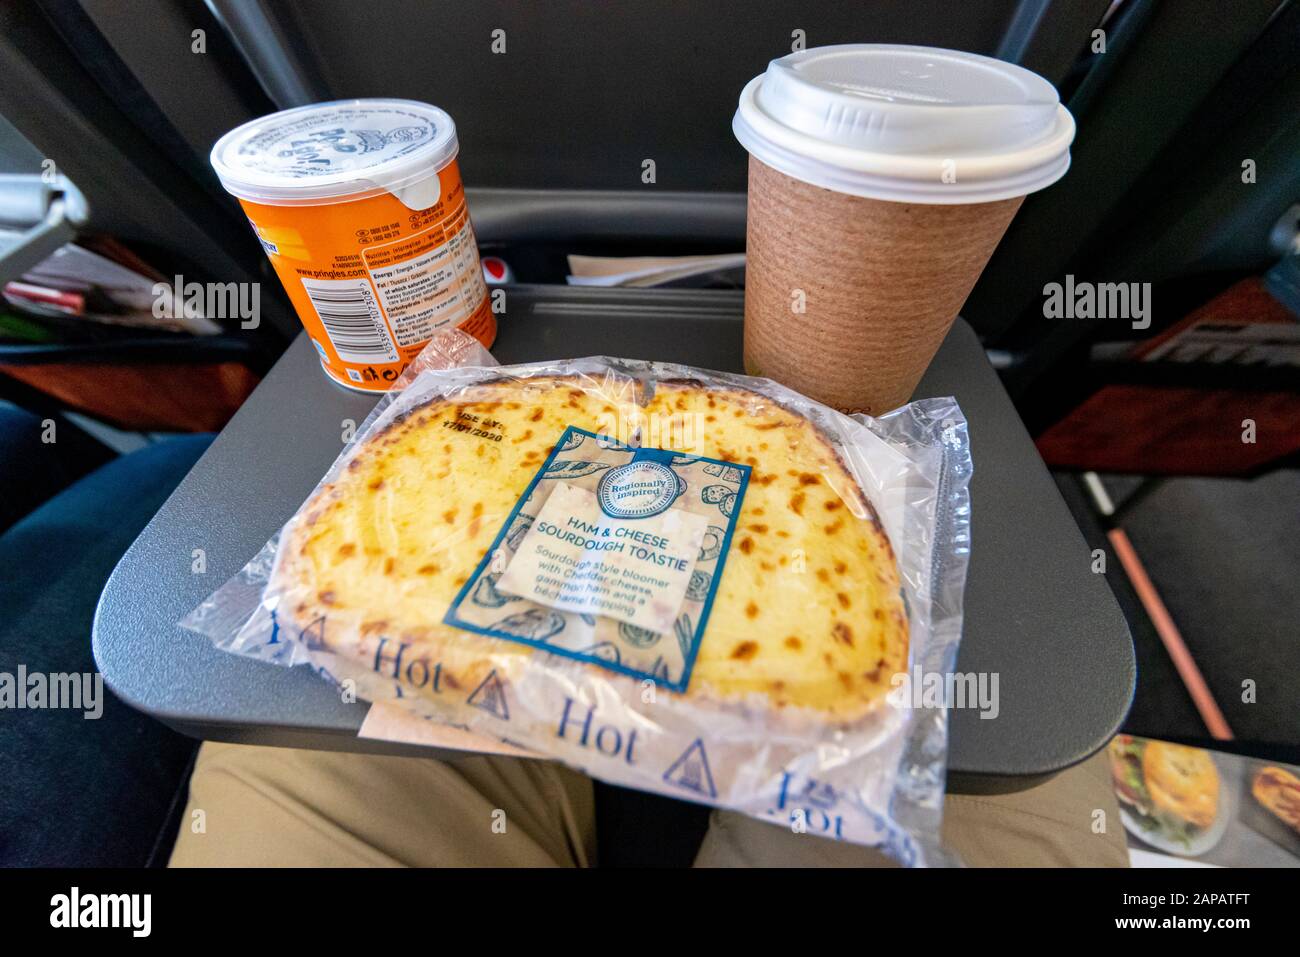 Essen und Trinken auf einem Tablett in einem easyJet Airbus A320 NEO Jet Flugzeug. Toastie mit Schinken und Käse, Pringles-Chips und Kaffee auf dem Flug Stockfoto